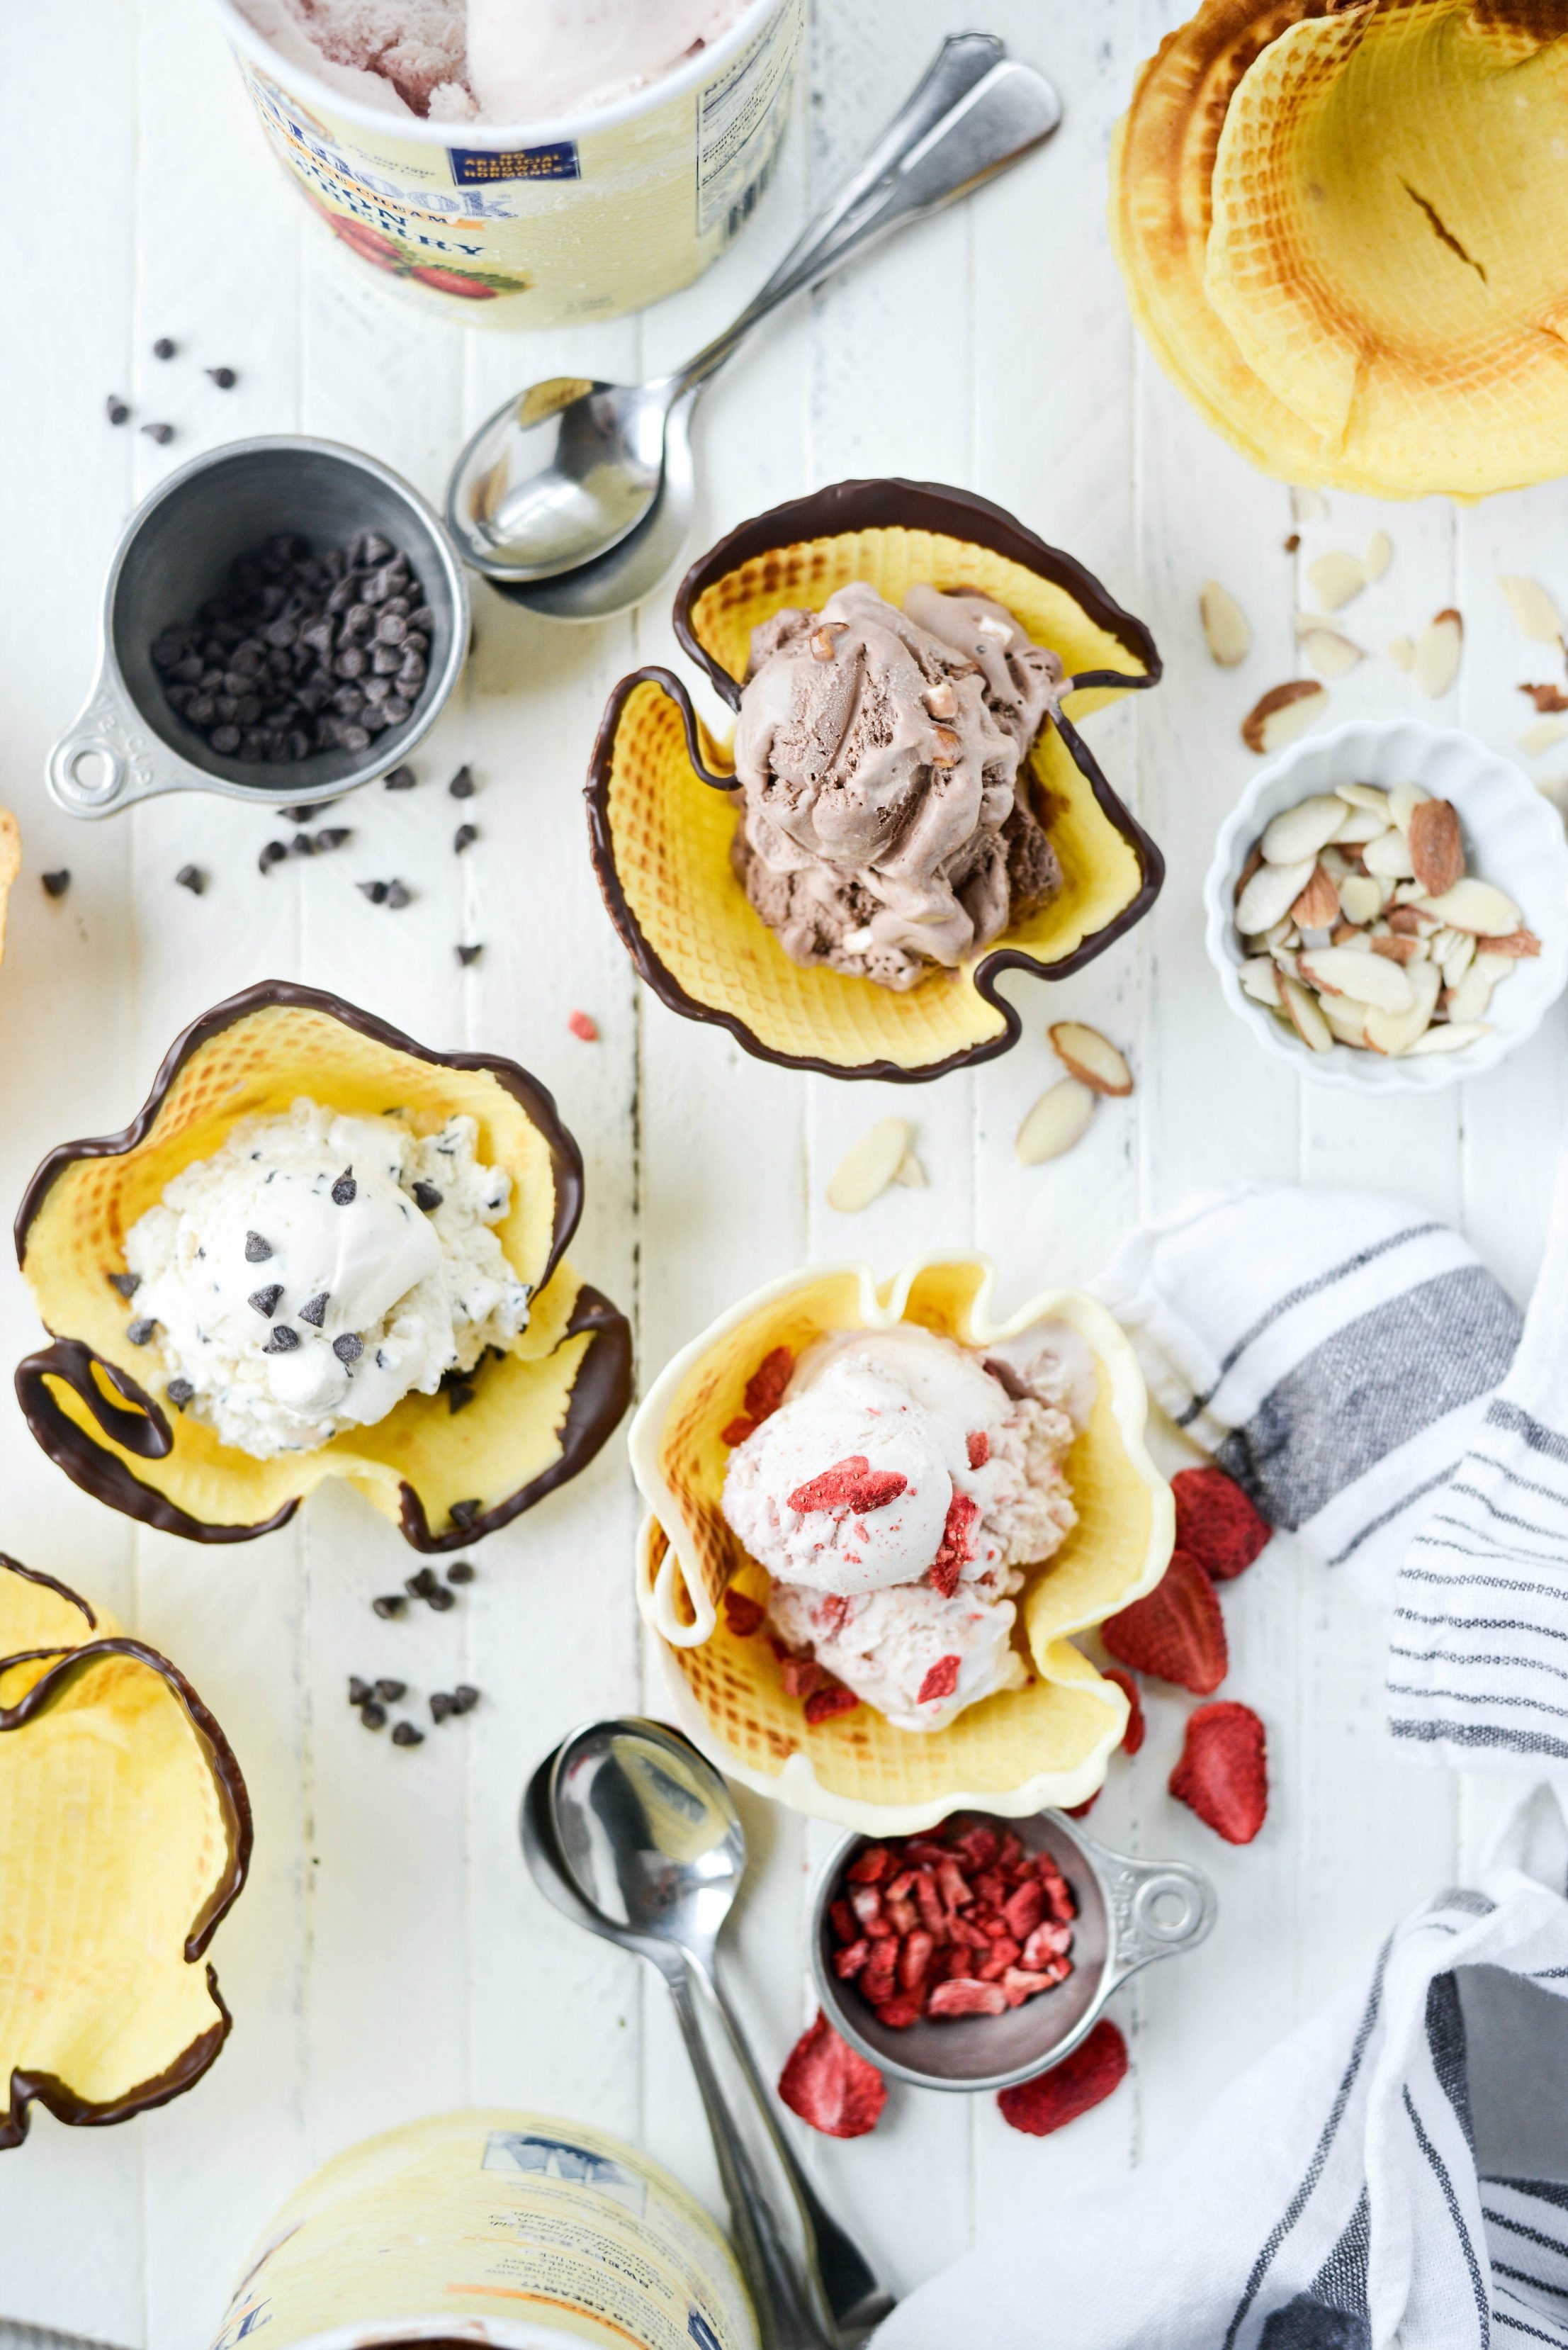 https://www.simplyscratch.com/wp-content/uploads/2018/07/Homemade-Ice-Cream-Waffle-Bowls-l-SimplyScratch.com-21-e1531446712951.jpg